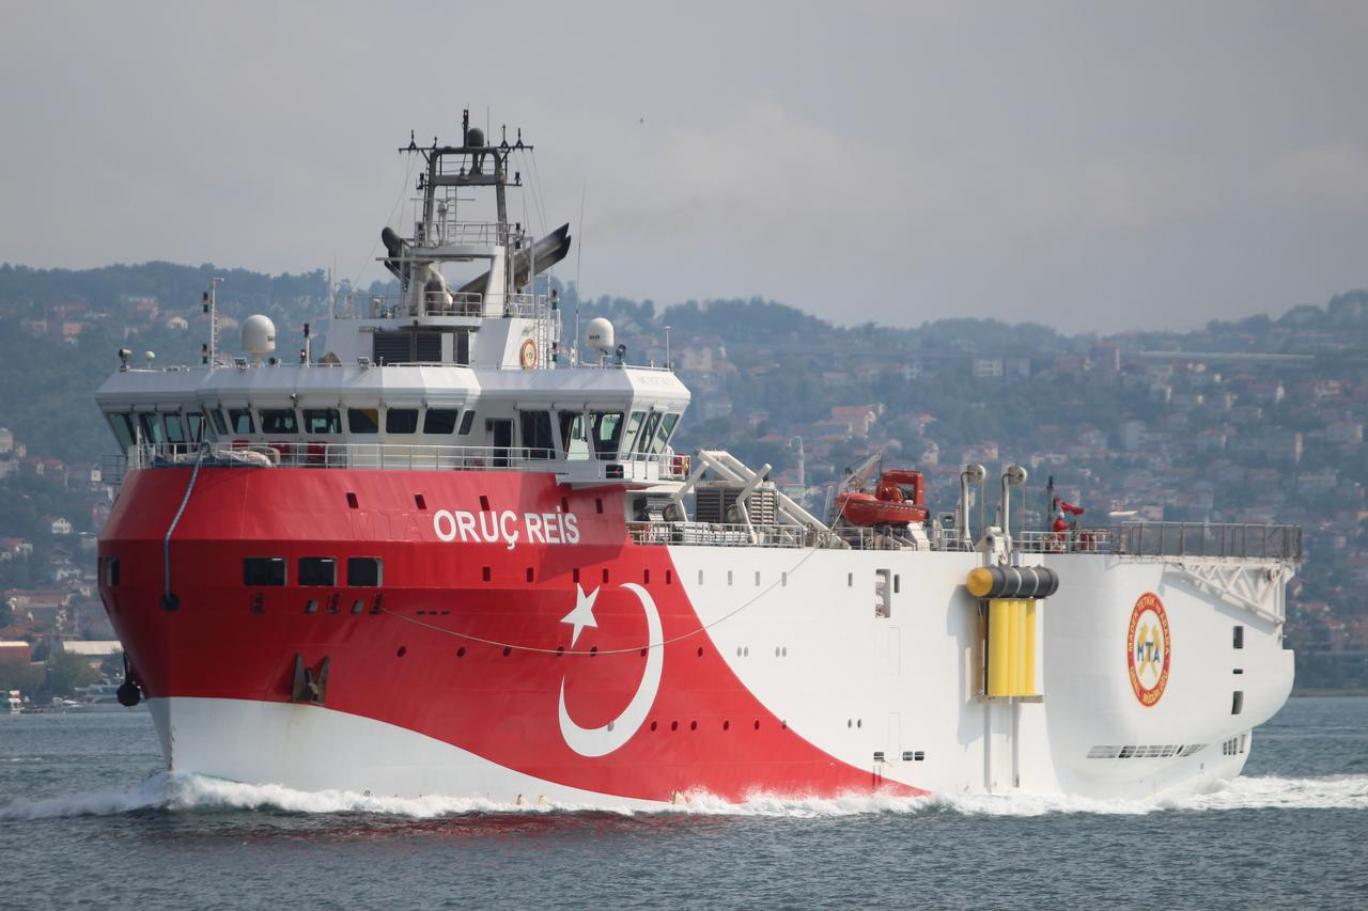 أثارت تركيا التنديد الدولي العام الماضي بإرسالها سفينة التنقيب "عروج ريس" لمناطق يونانية (رويترز).jpg